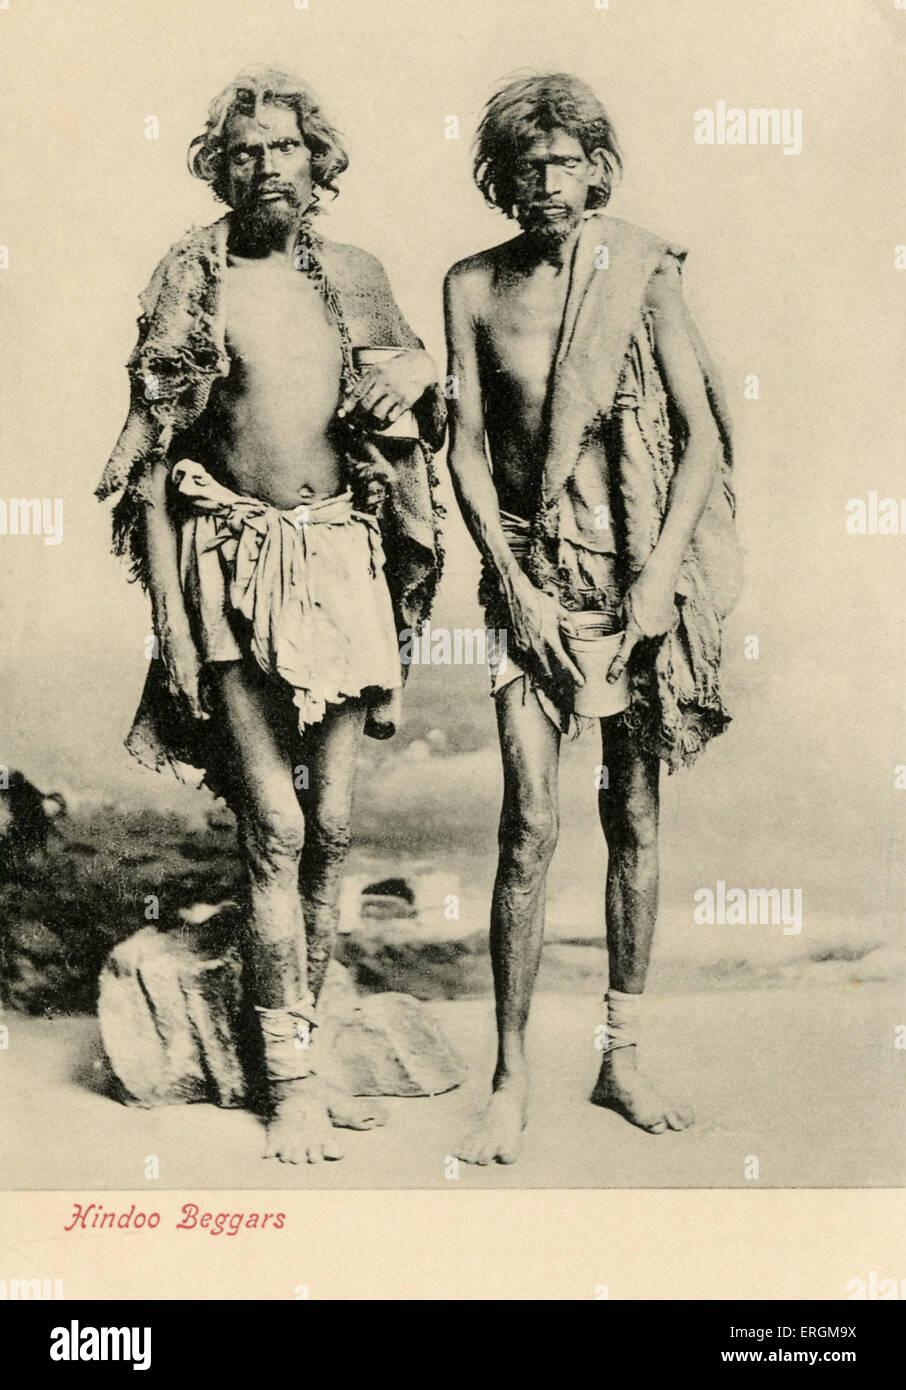 Deux mendiants hindous. Photographie prise au début du xxe siècle. Sous-titre suivant : "Les mendiants hindou'. Les deux ont bandé les jambes, porter des haillons, et l'homme sur la droite détient un peut à la taille. Banque D'Images